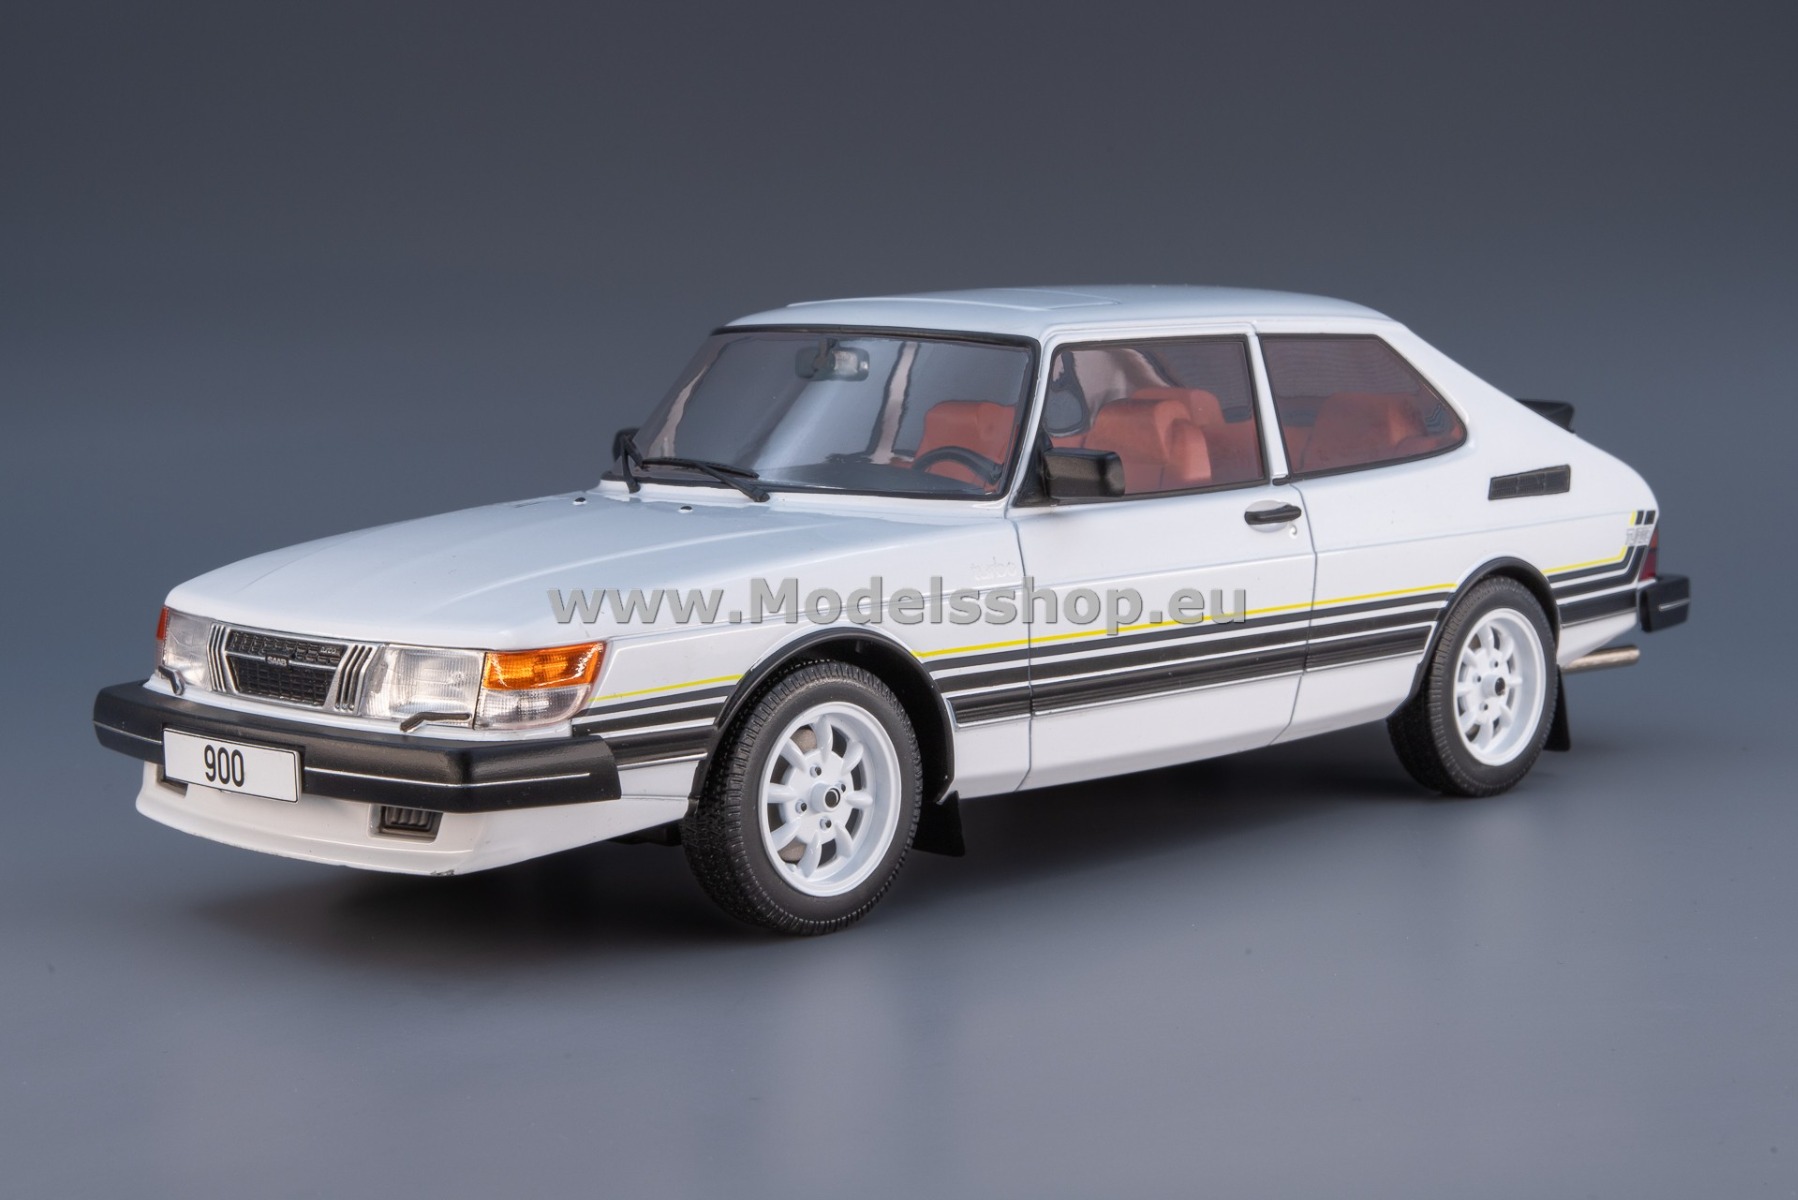 MCG 18339 Saab 900 Turbo, 1981 /white - decorated/